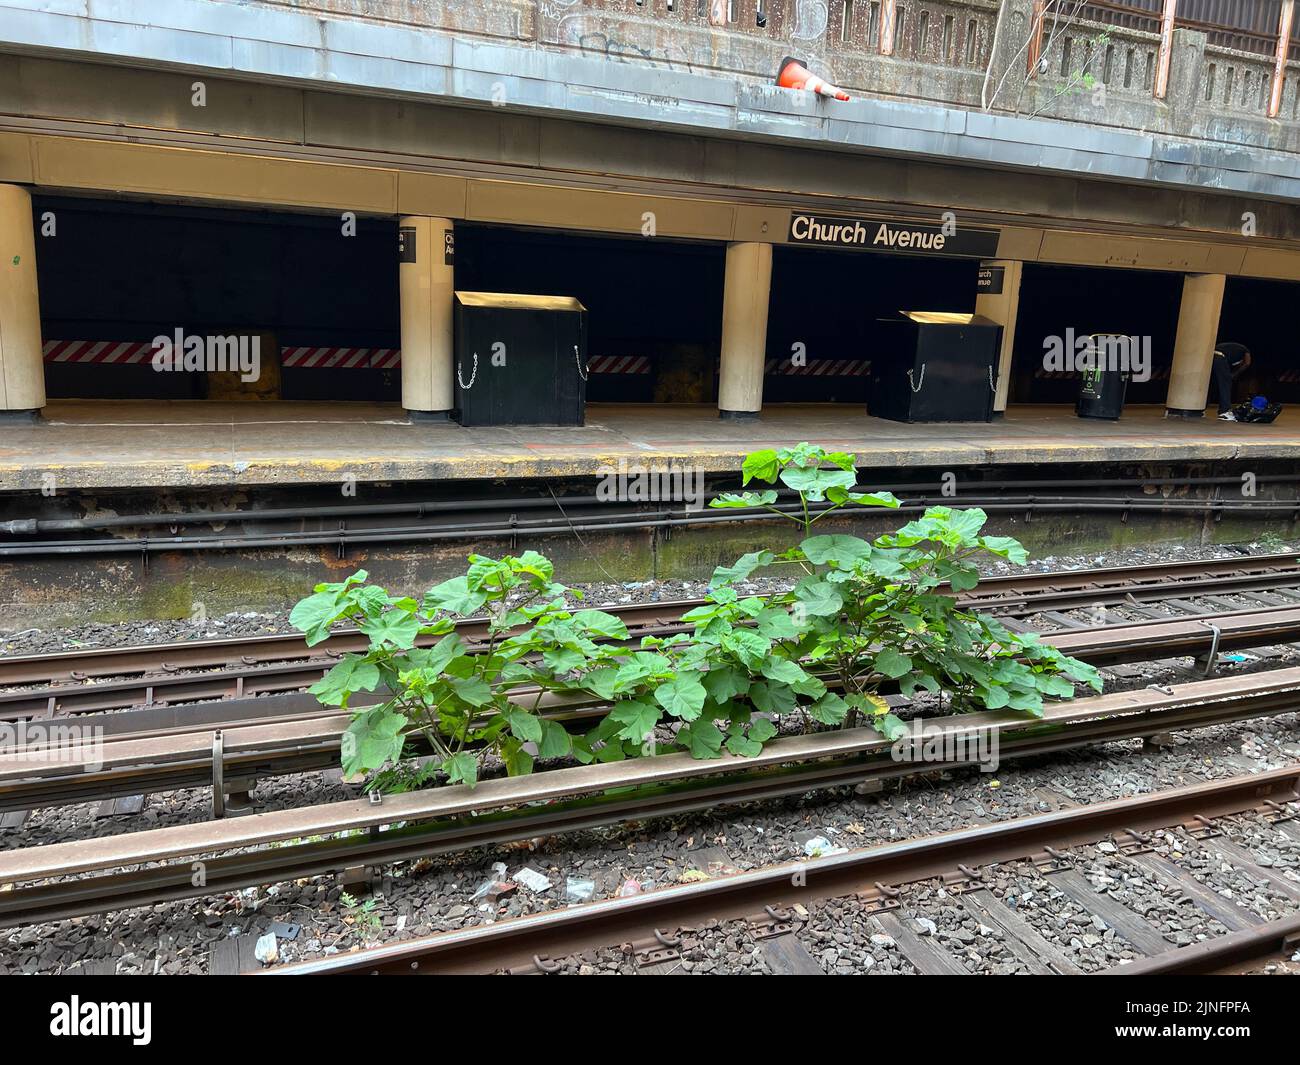 La naturaleza se afirma en las pistas de la estación de metro al aire libre de Church Avenue a lo largo de las líneas Q & B en Brooklyn, Nueva York. Foto de stock